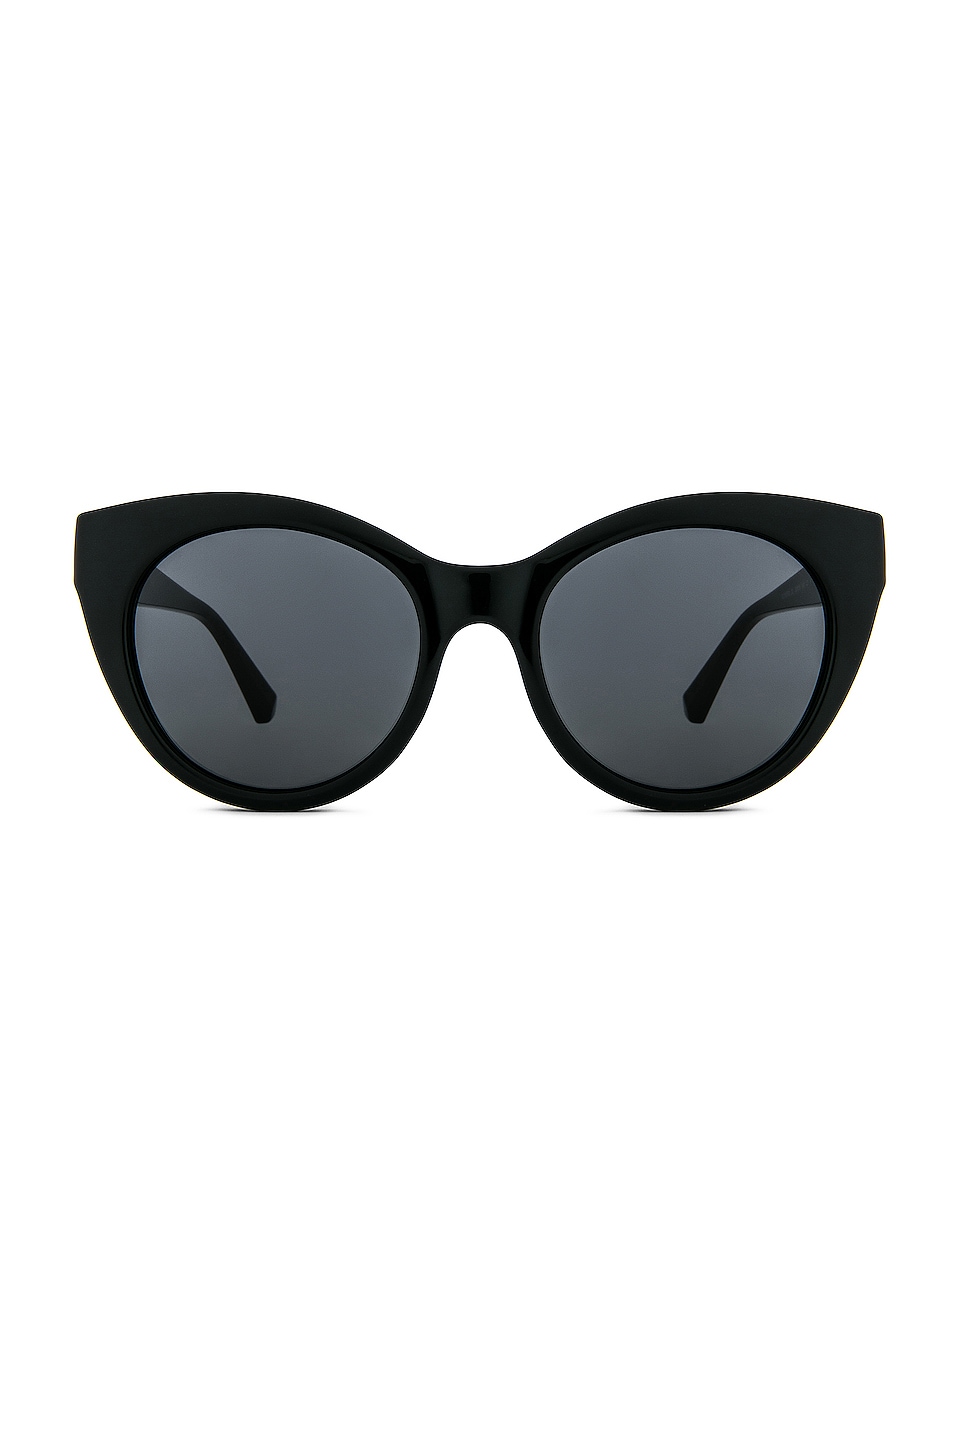 HAWKERS Divine Sunglasses in Black | REVOLVE